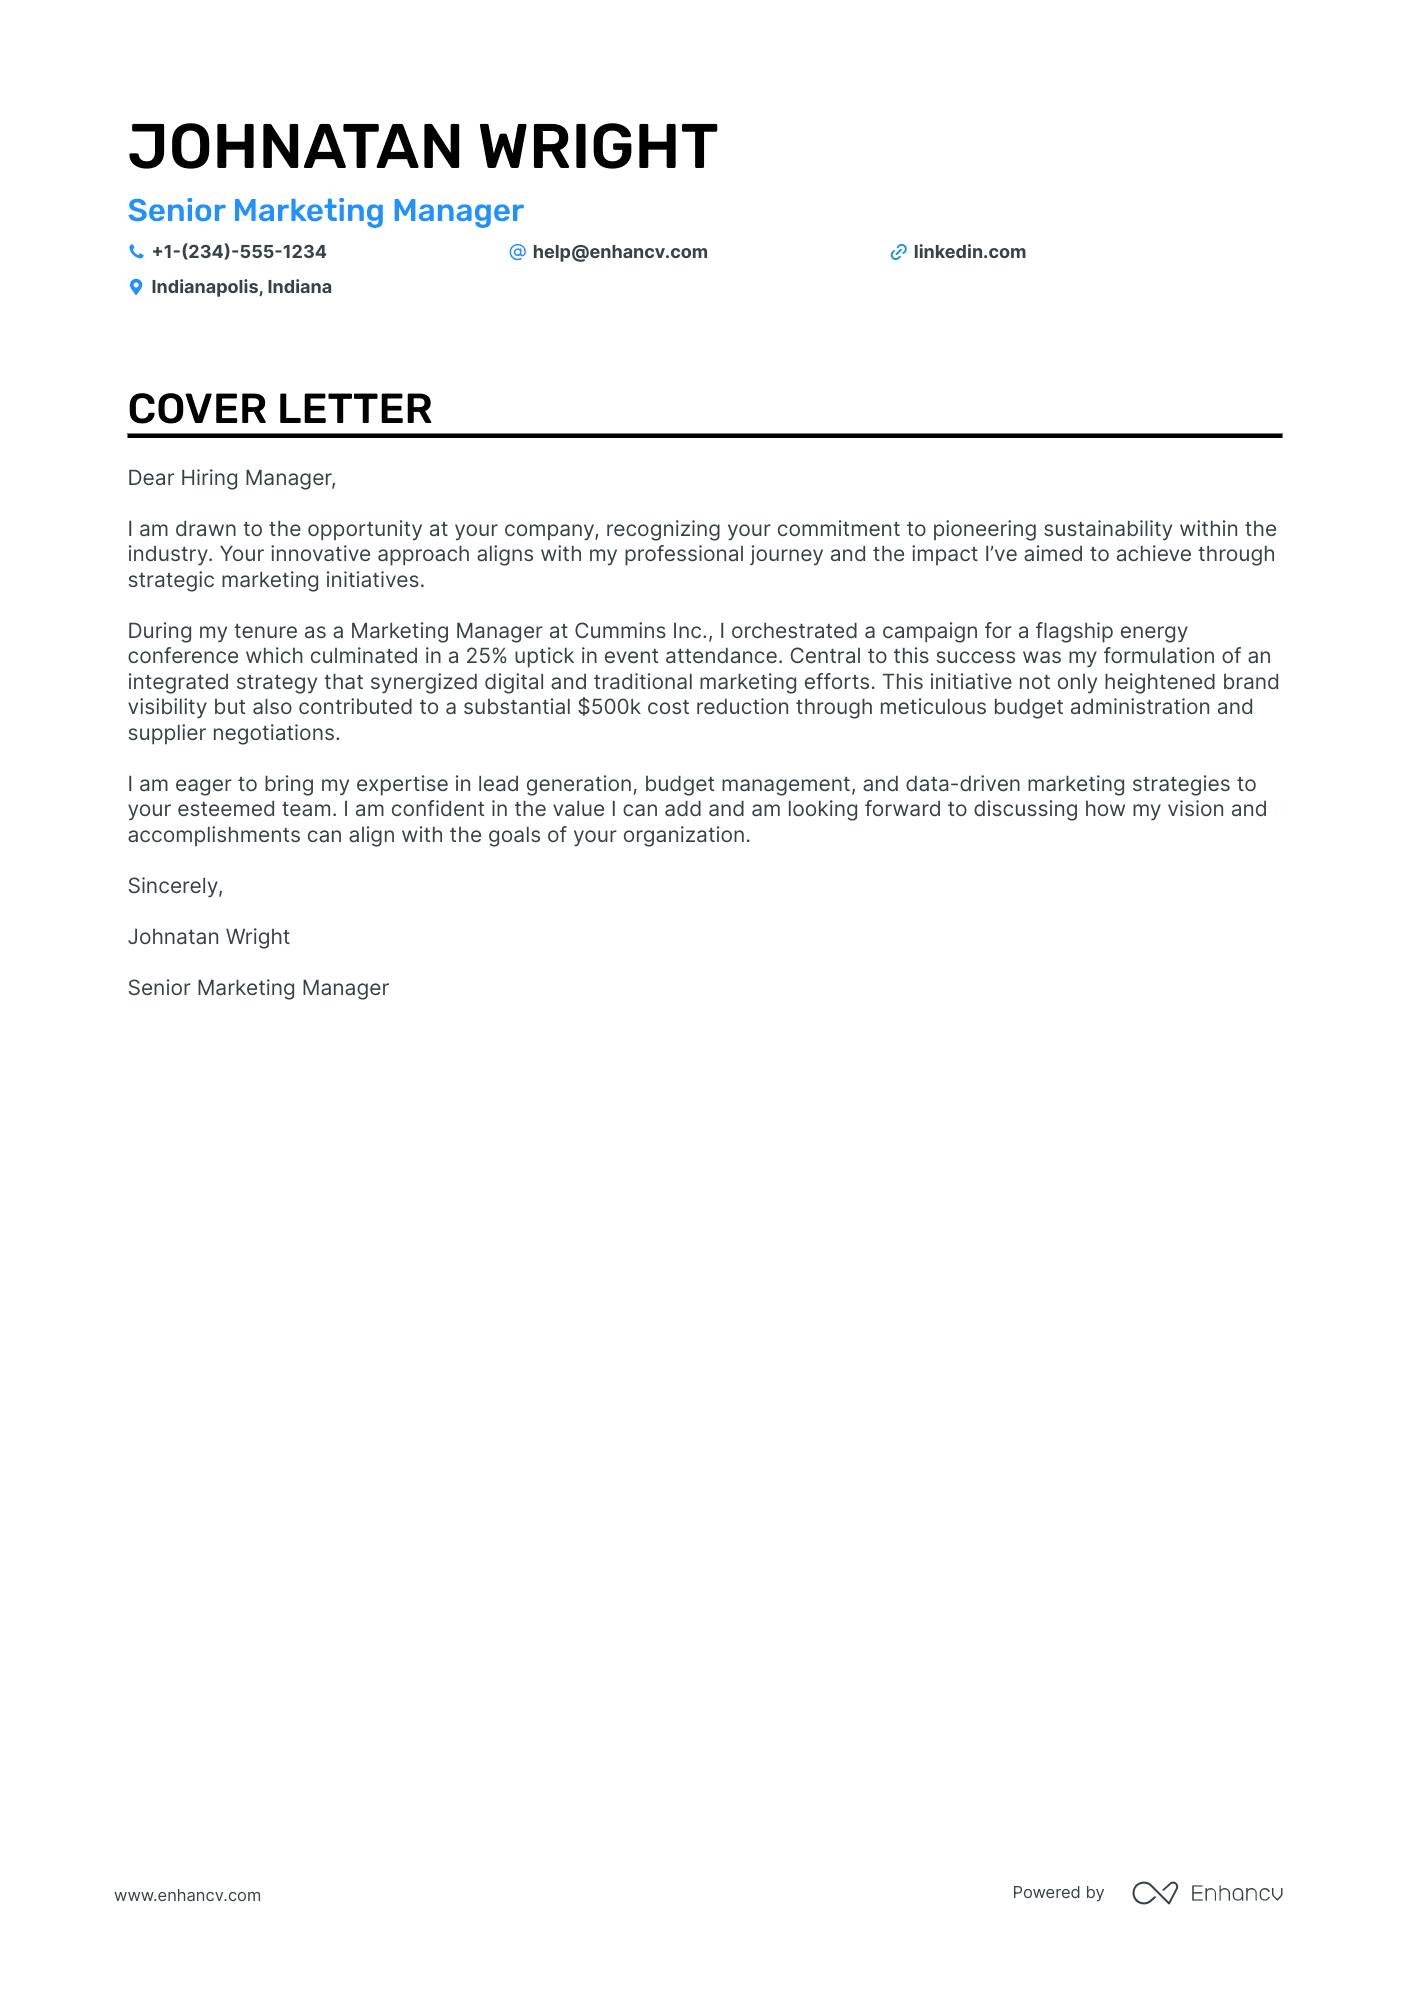 Senior Marketing Manager cover letter